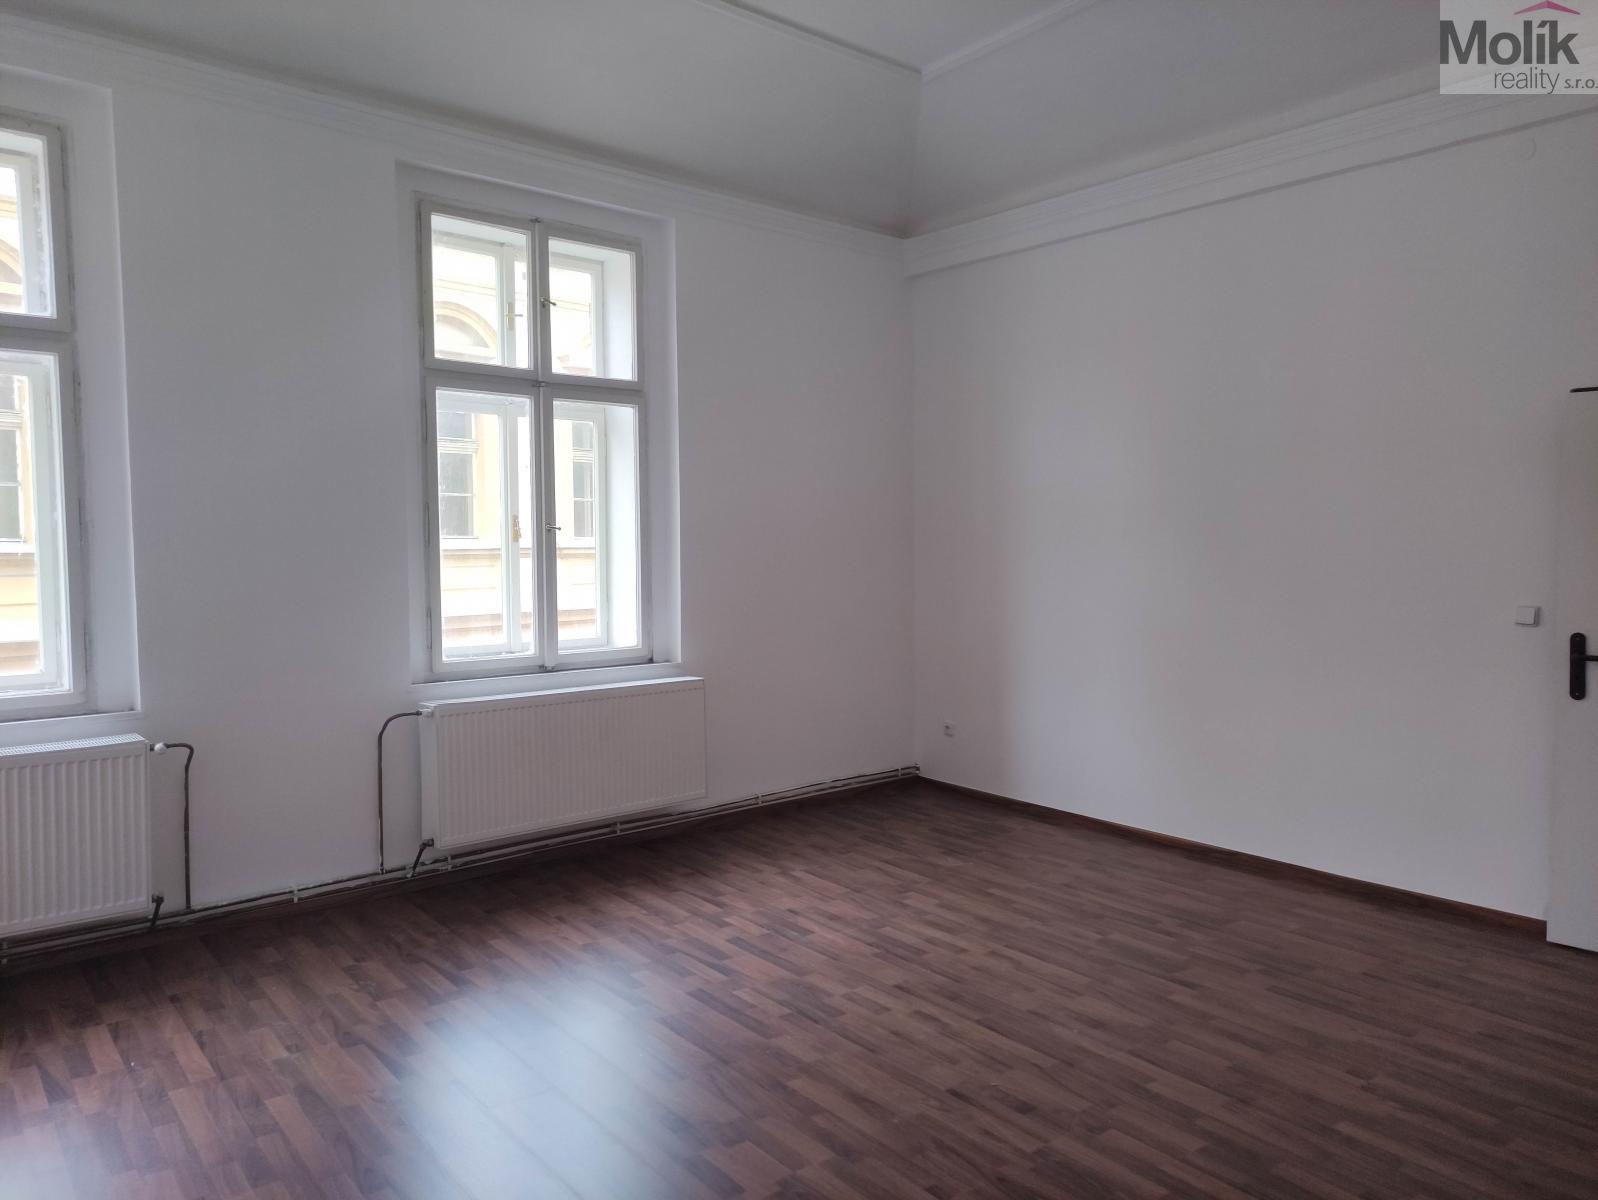 K pronájmu byt v soukromém vlastnictví 2+1 (52 m2) v Duchcově, ulice Městské příkopy 32